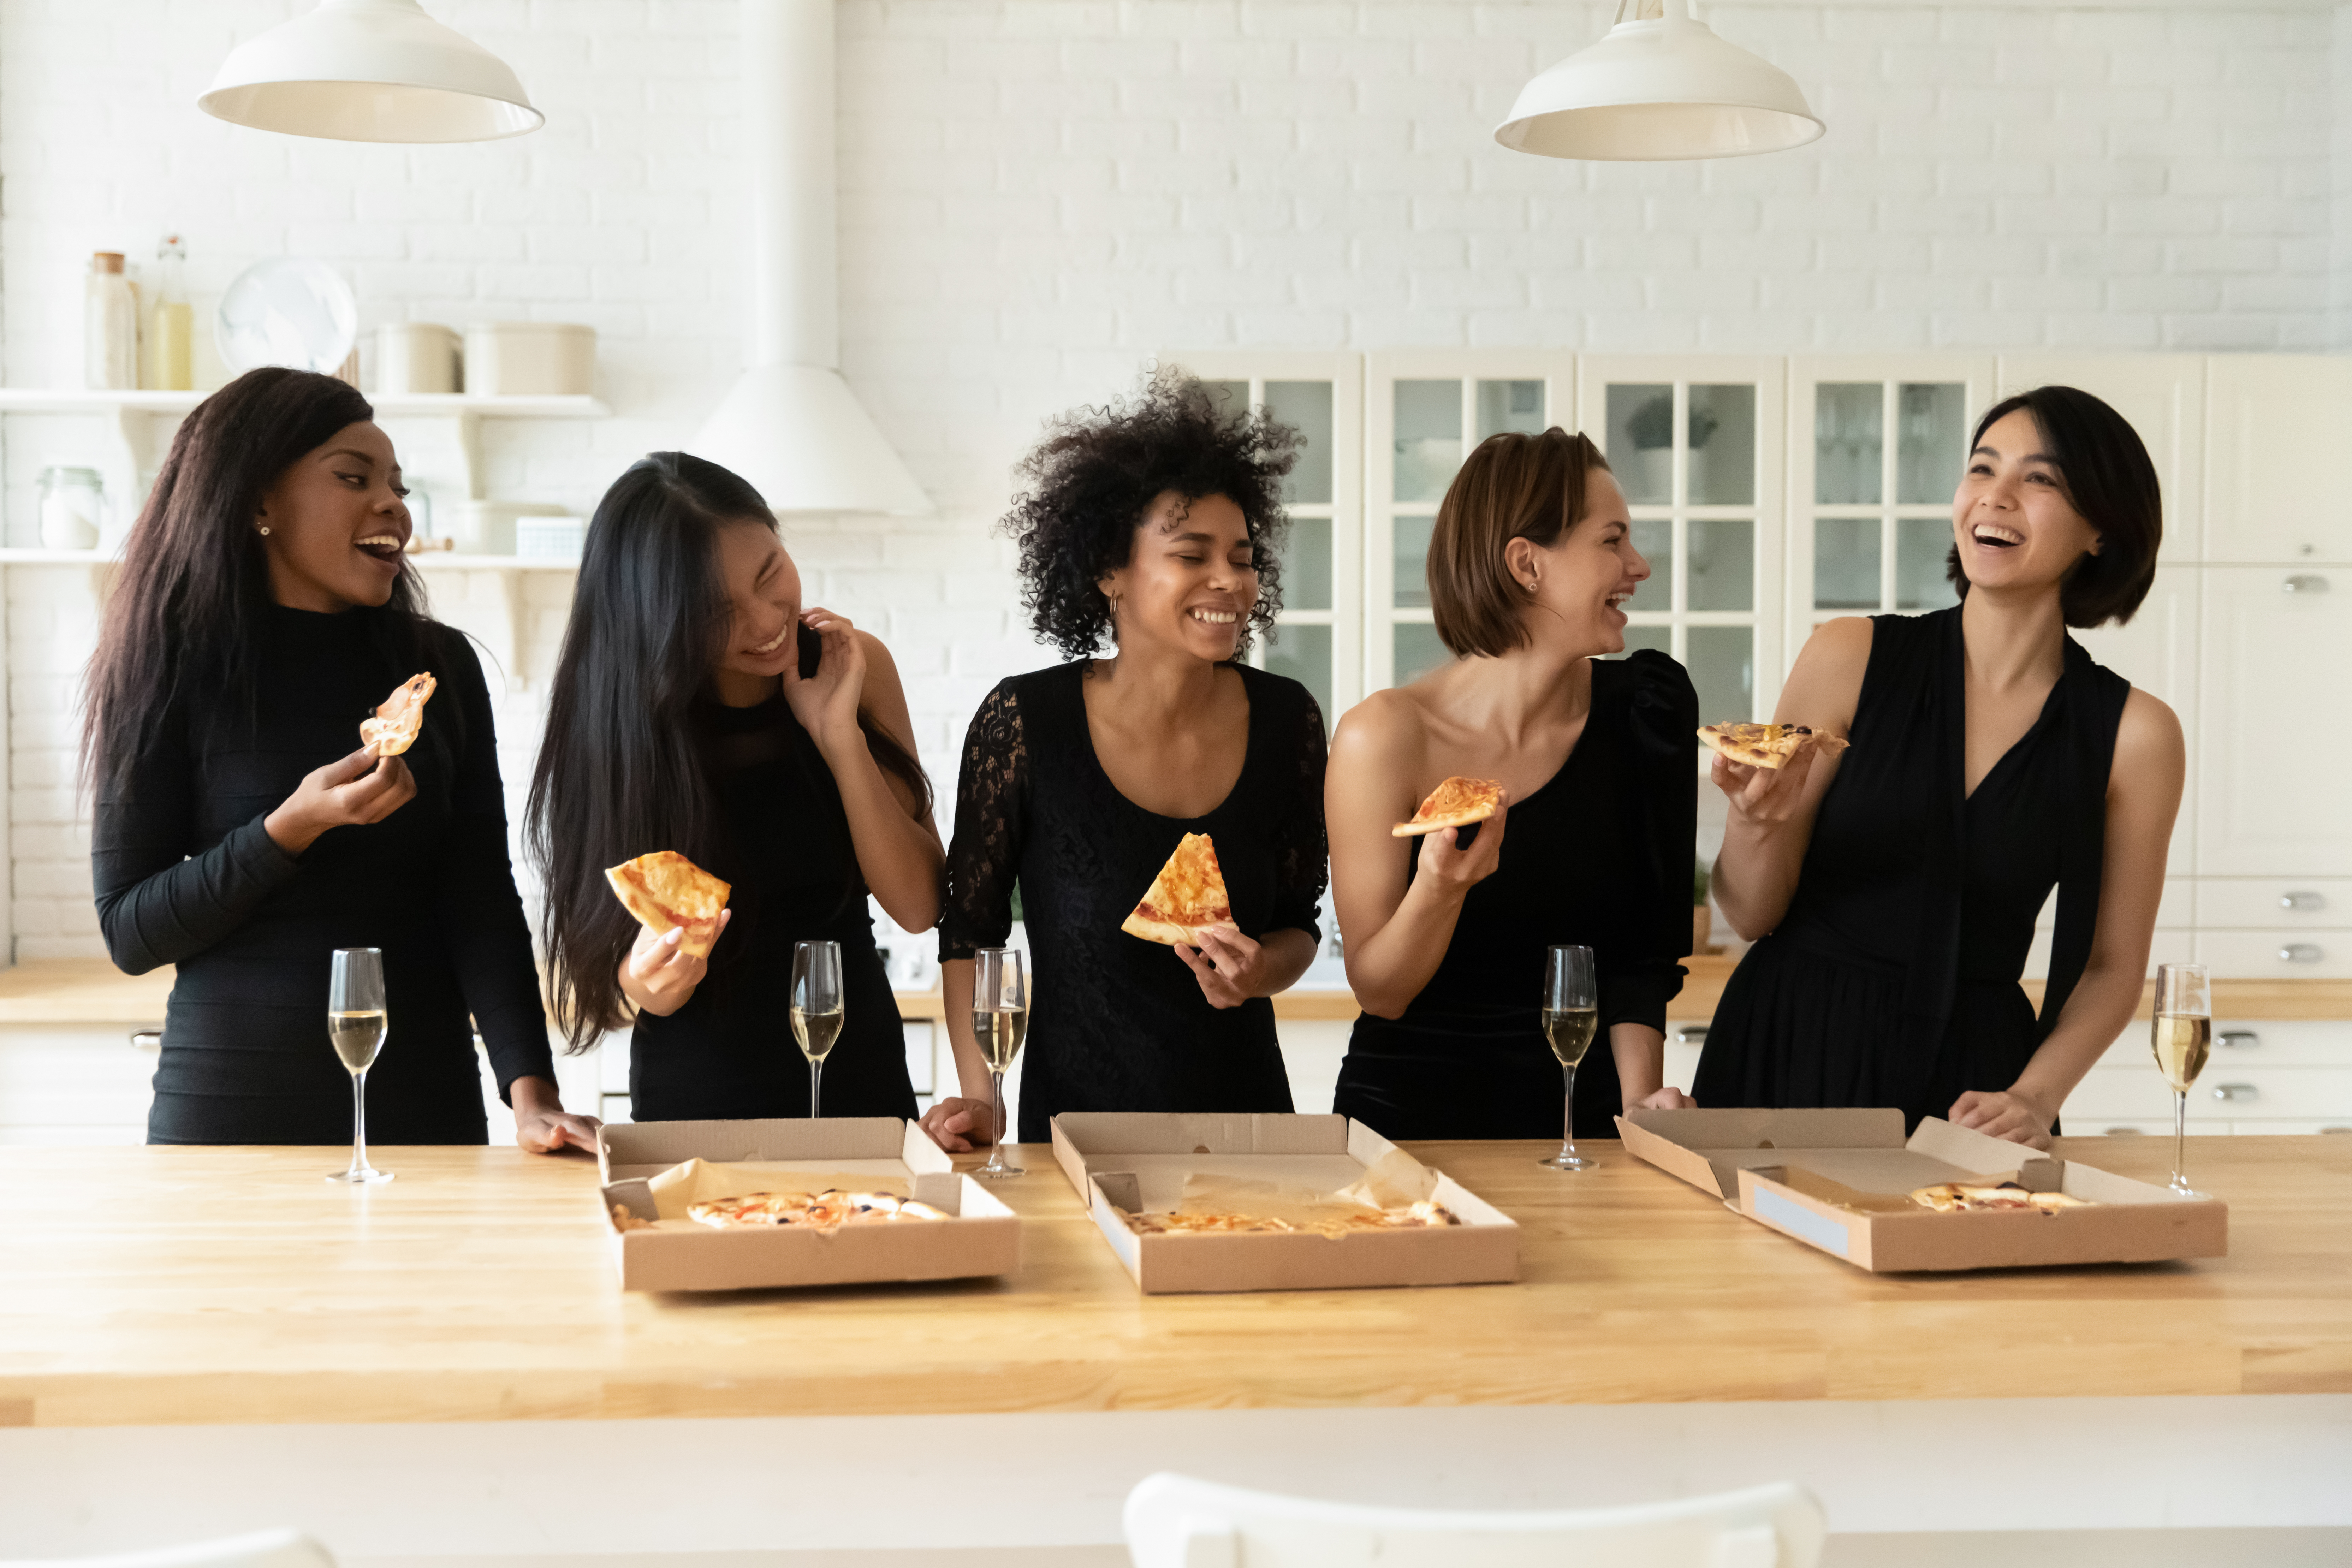 Schwarz gekleidete Frauen essen Pizza und trinken Champagner | Quelle: Shutterstock